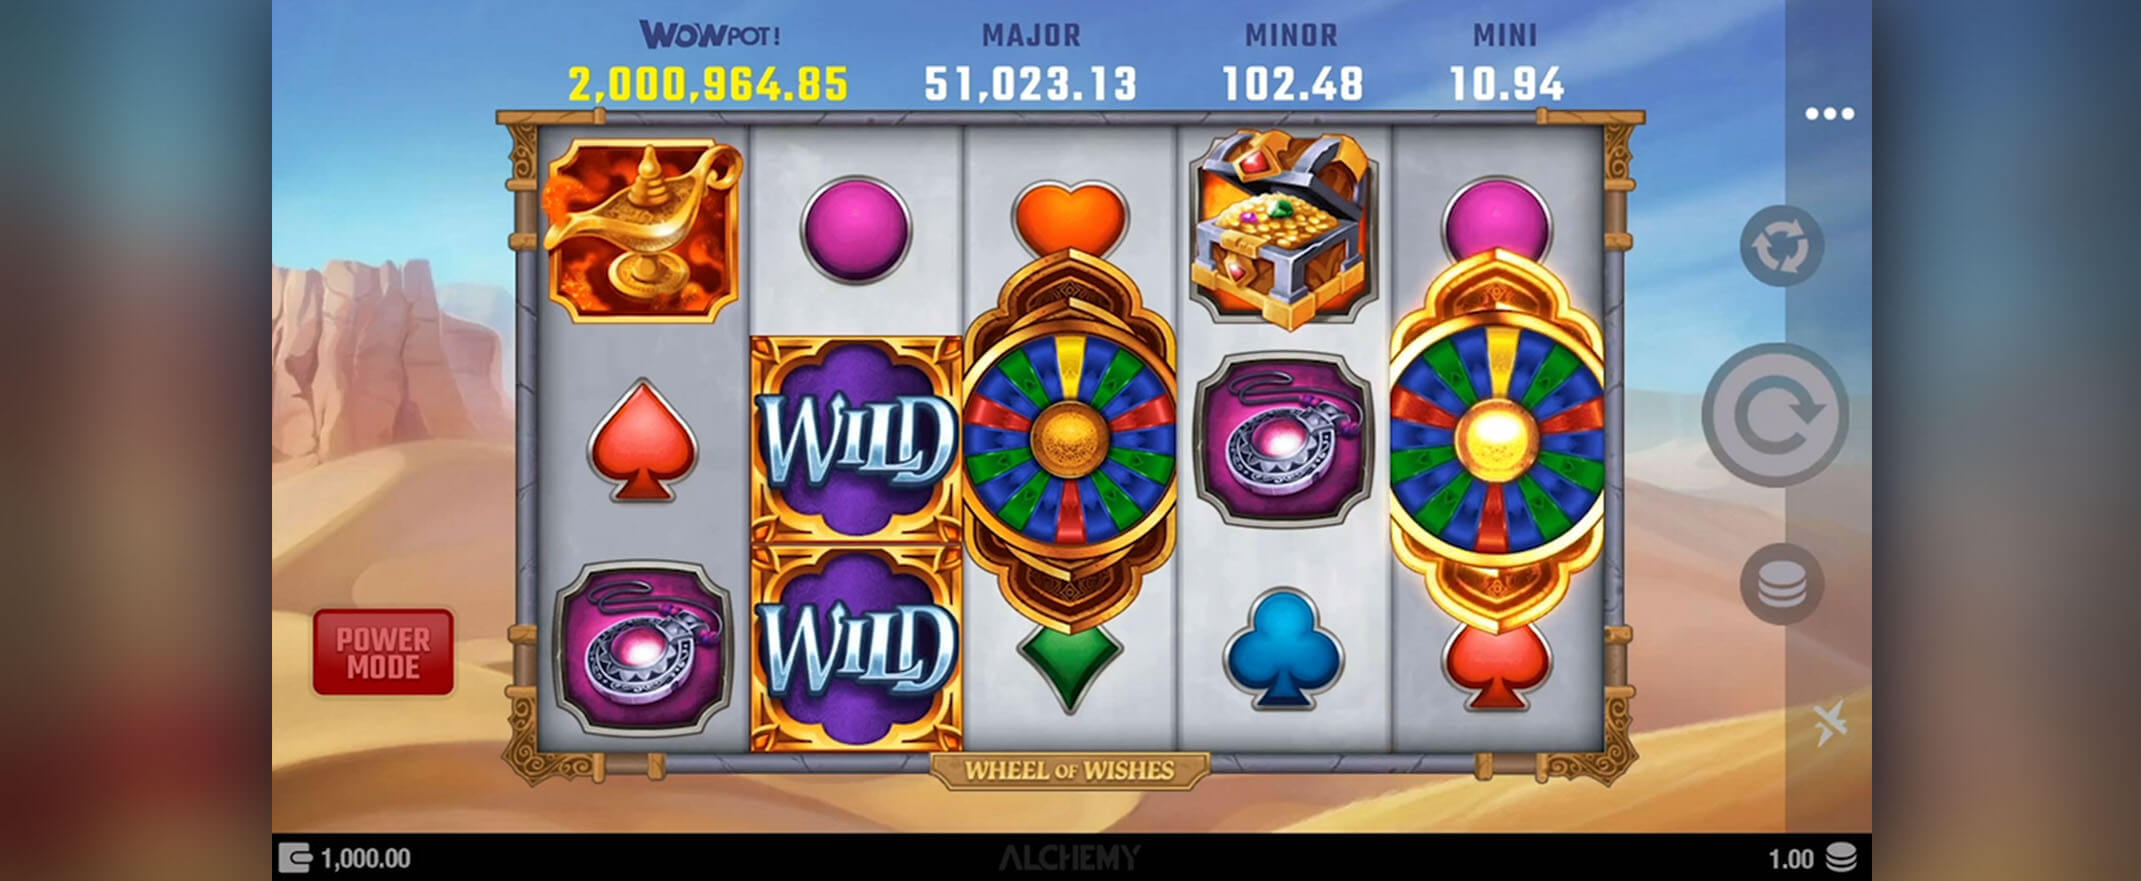 Wheel of Wishes Spielautomaten spielen